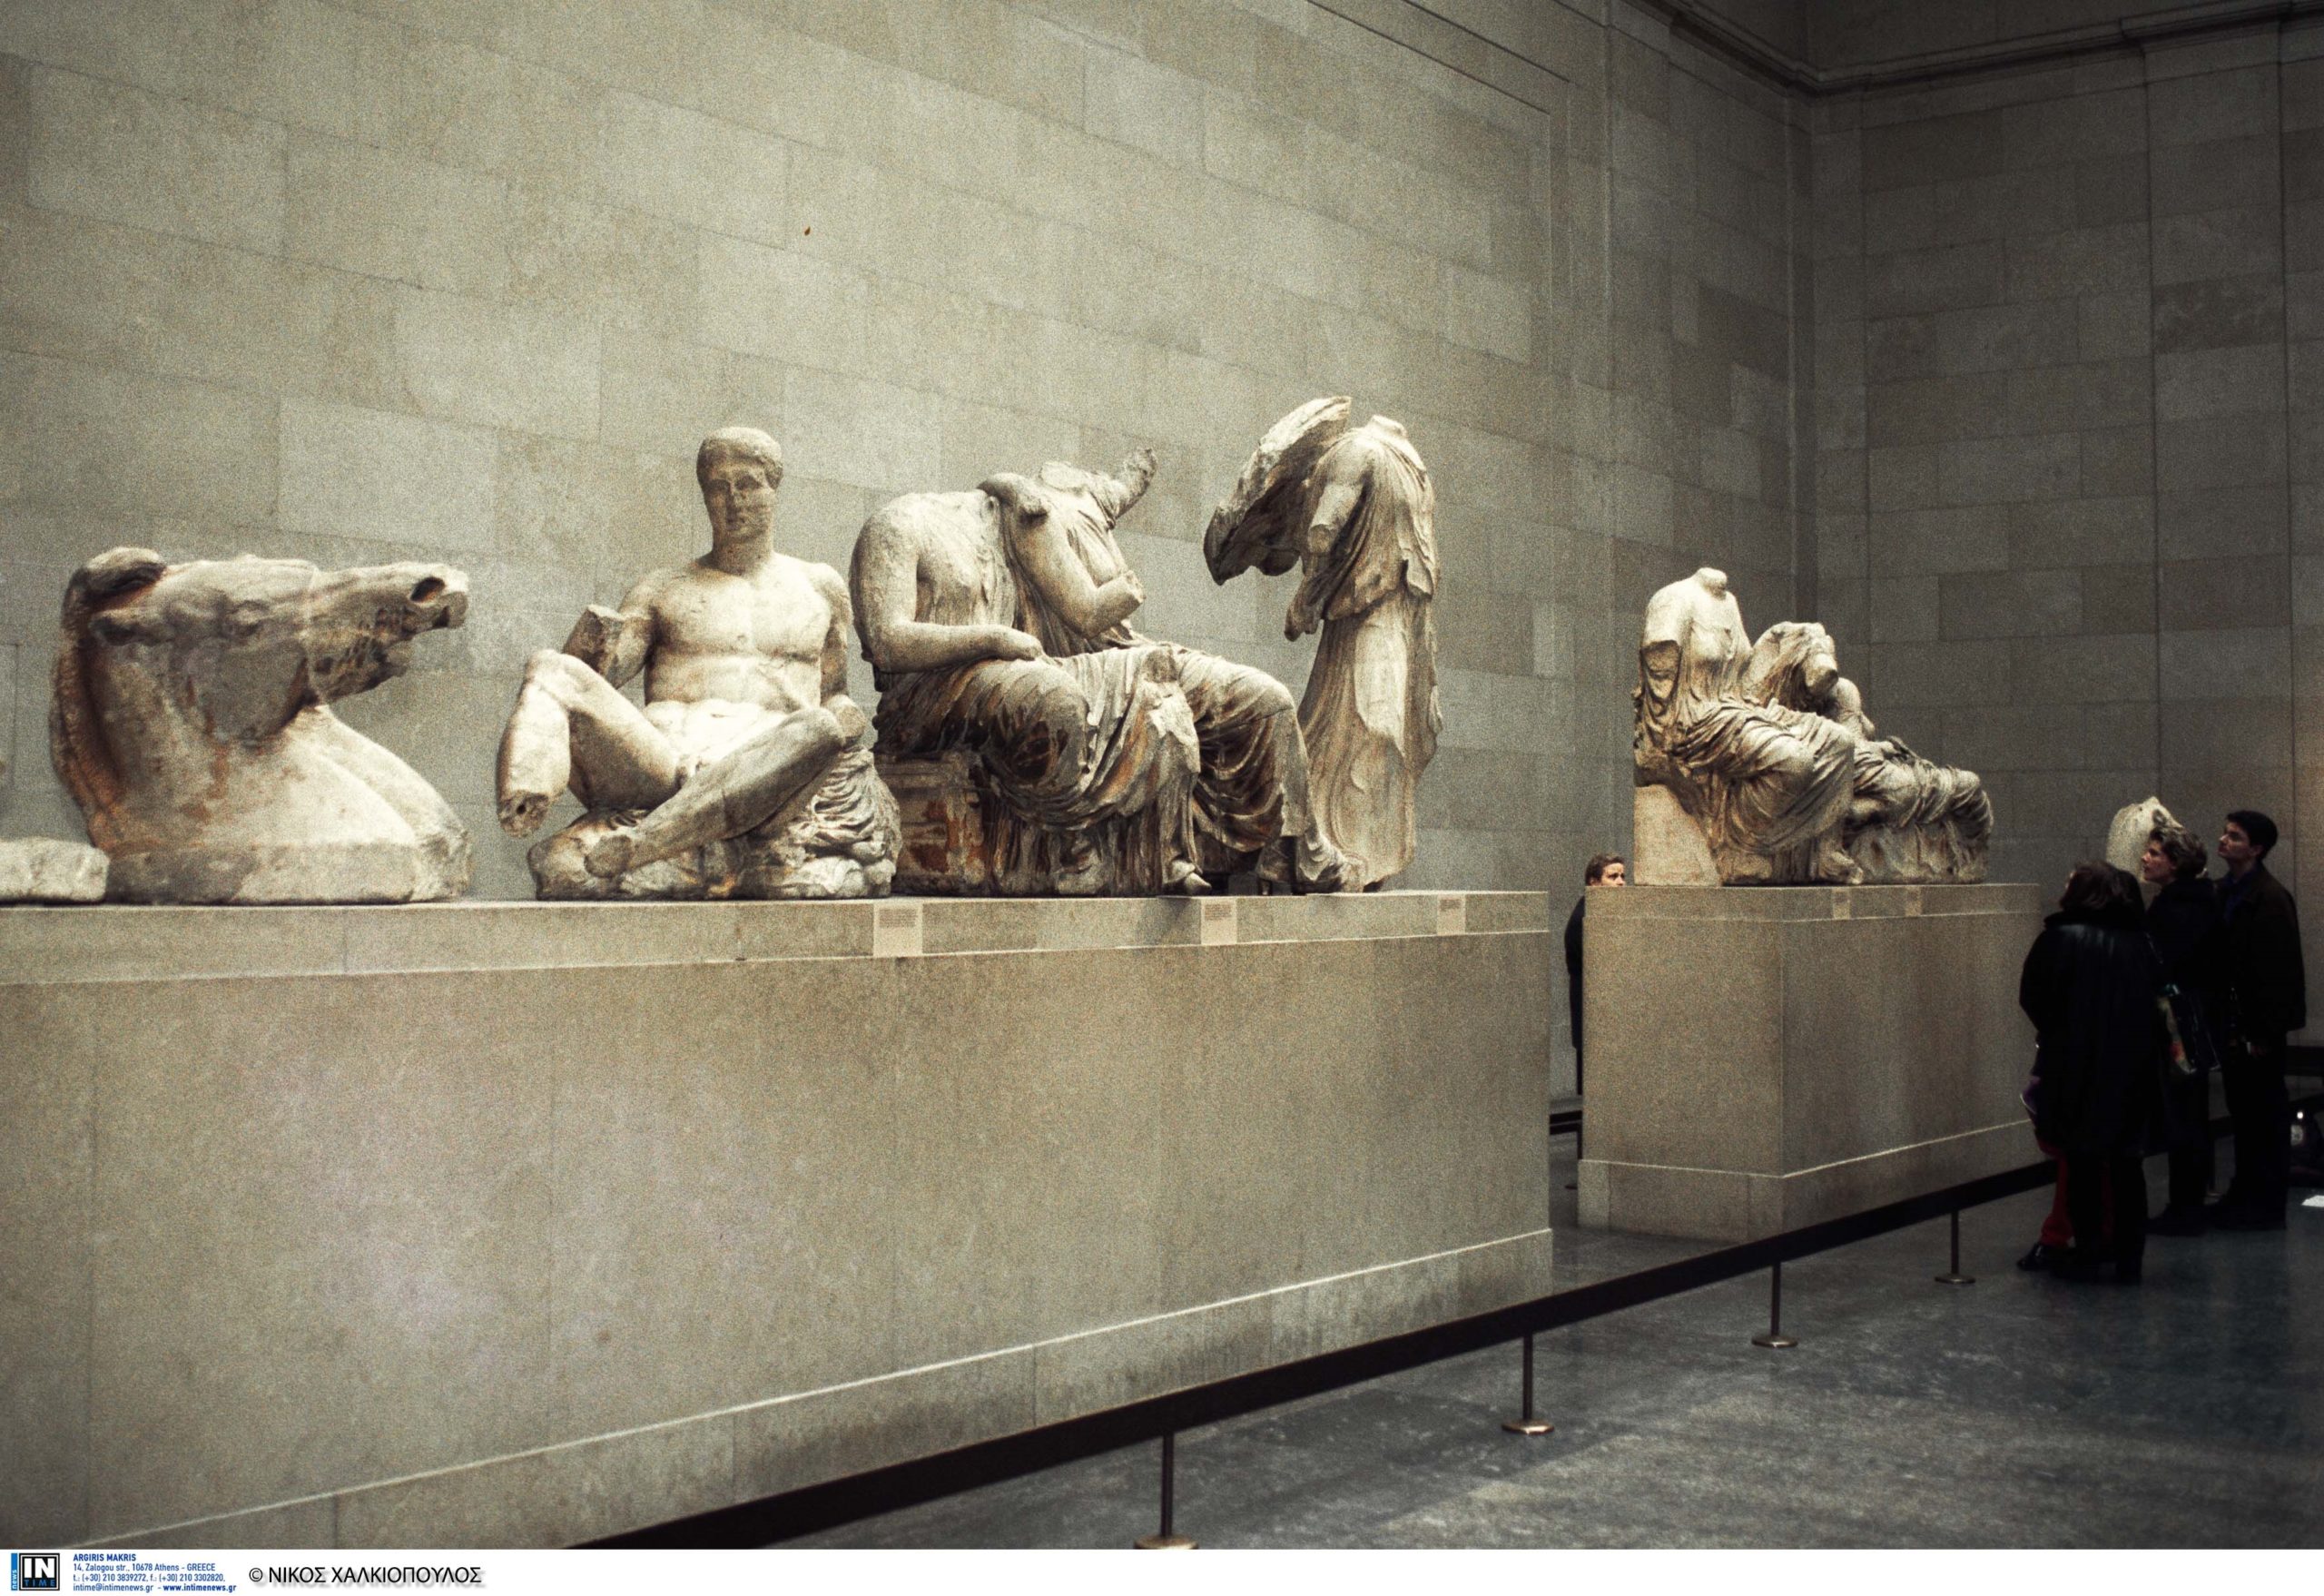 Βρετανικό Μουσείο: Η πρόταση για την προσωρινή επιστροφή των Γλυπτών του Παρθενώνα – Τι αντάλλαγμα ζητά